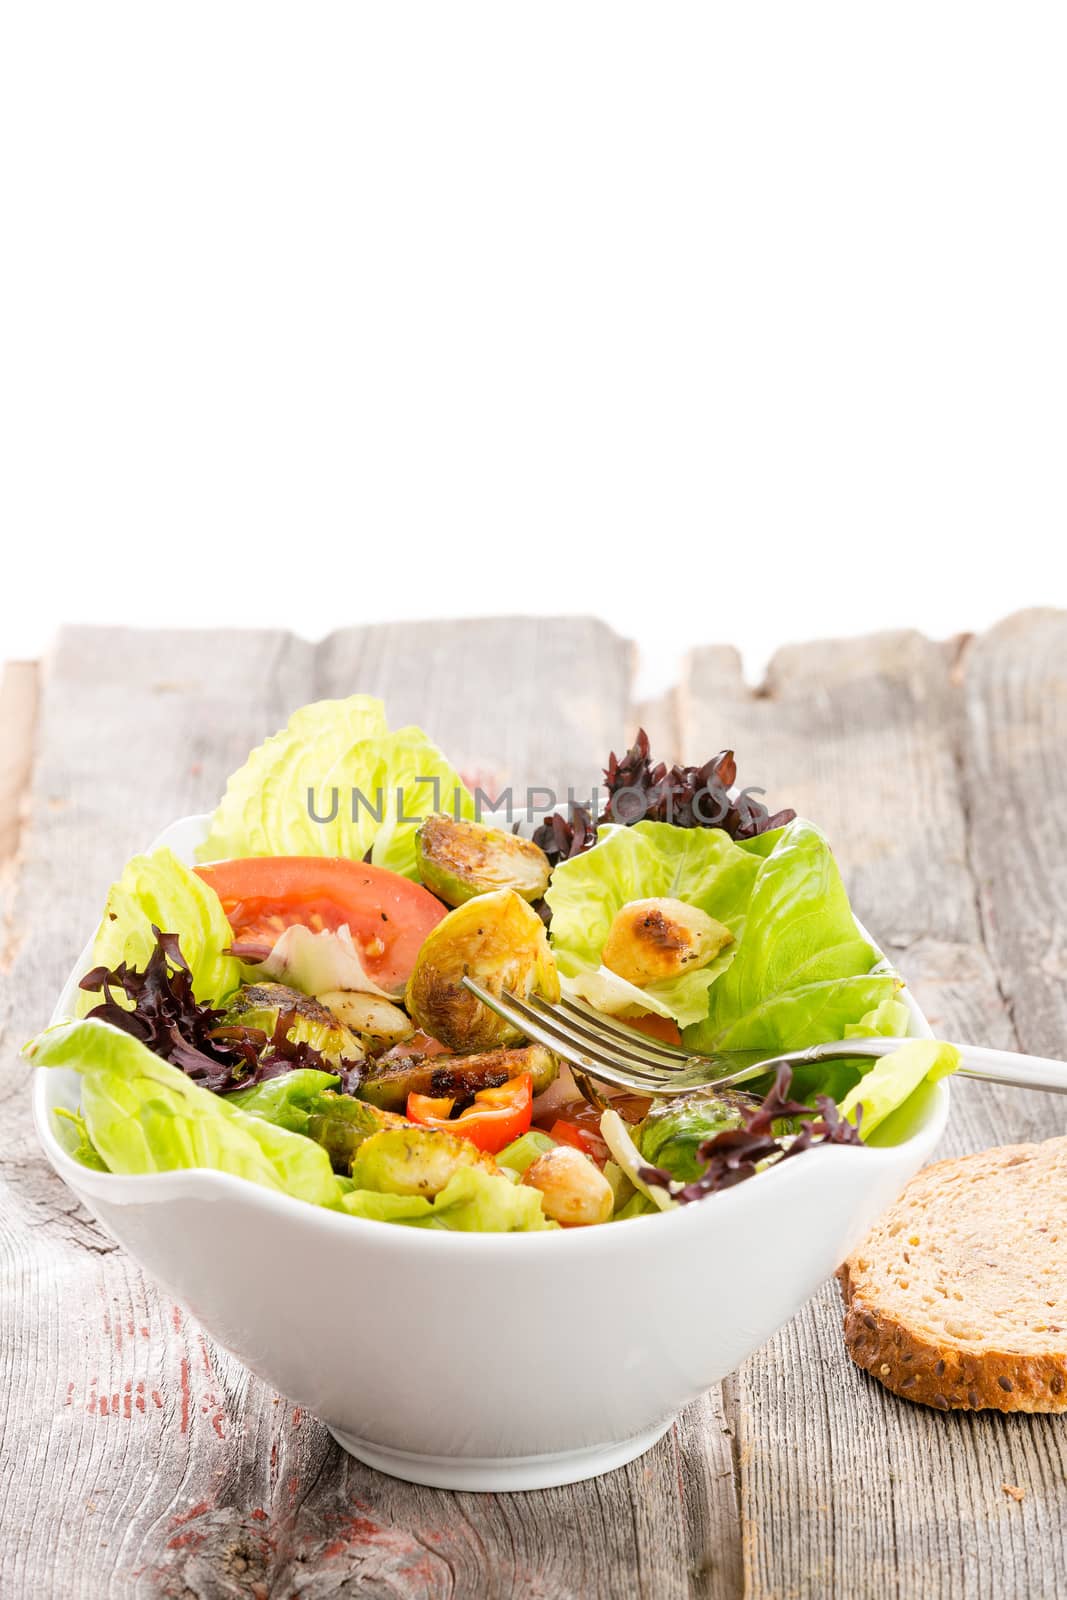 Healthy vegetarian salad by coskun